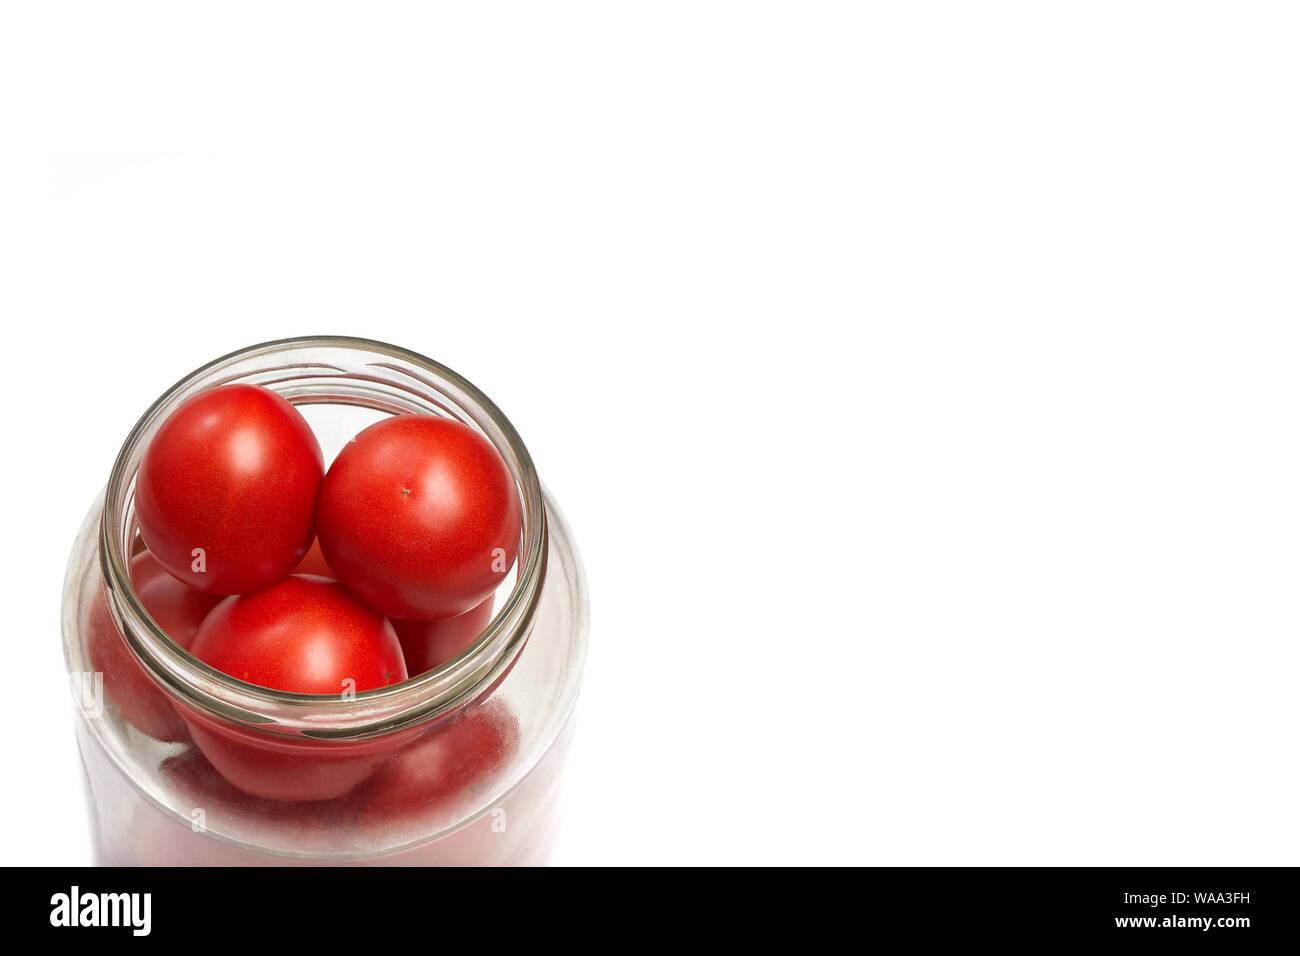 Tomates rojos apilados en un tarro secanar, preparación para enlatar. Espacio para el contenido o texto Foto de stock